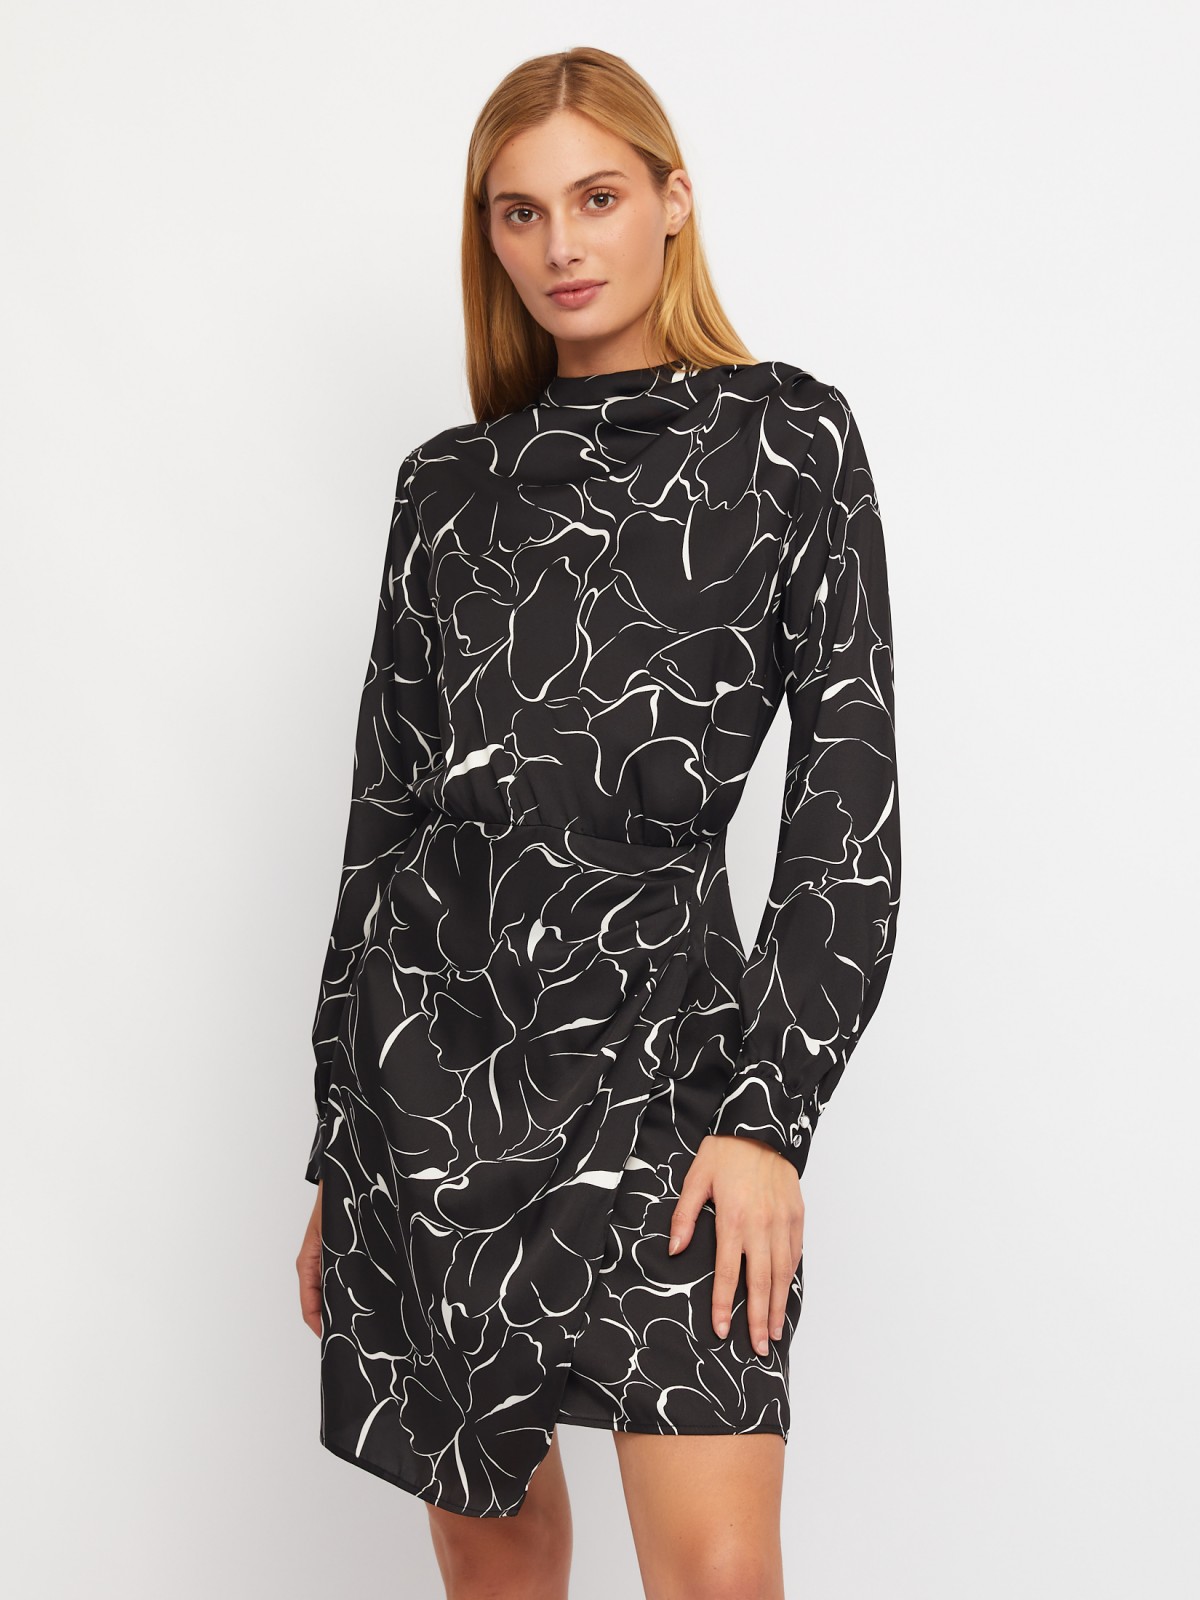 Атласное платье длины мини с драпировкой и подолом на запах zolla 024118262131, цвет черный, размер XS - фото 1